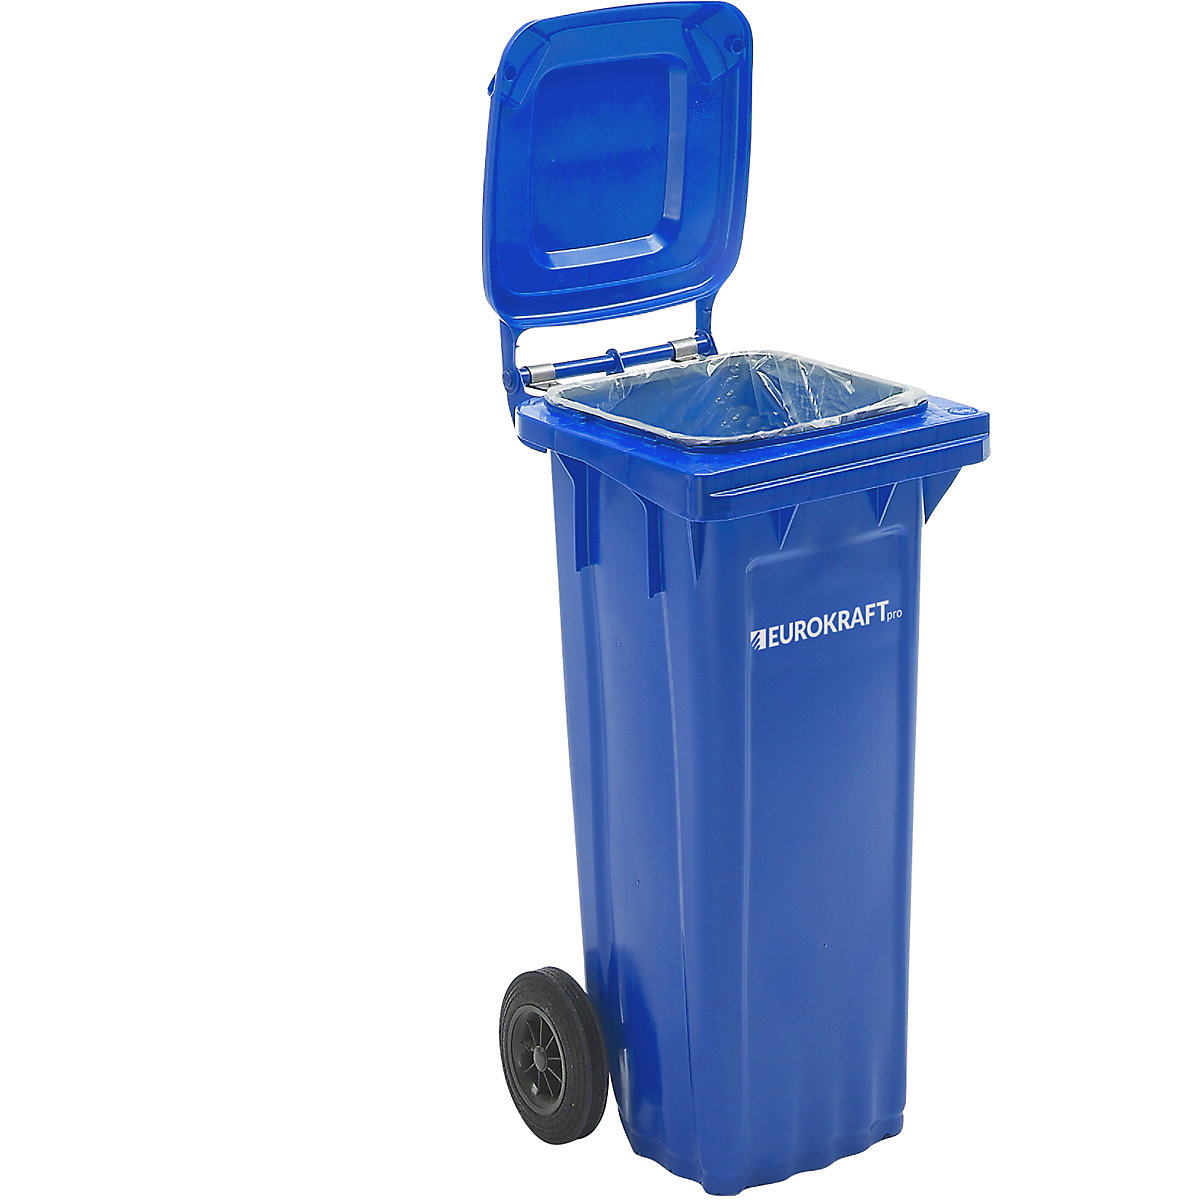 DIN EN 840 szabvány szerinti hulladékgyűjtő – eurokraft pro, űrtartalom 80 l, szé x ma x mé 448 x 932 x 514 mm, kék-3